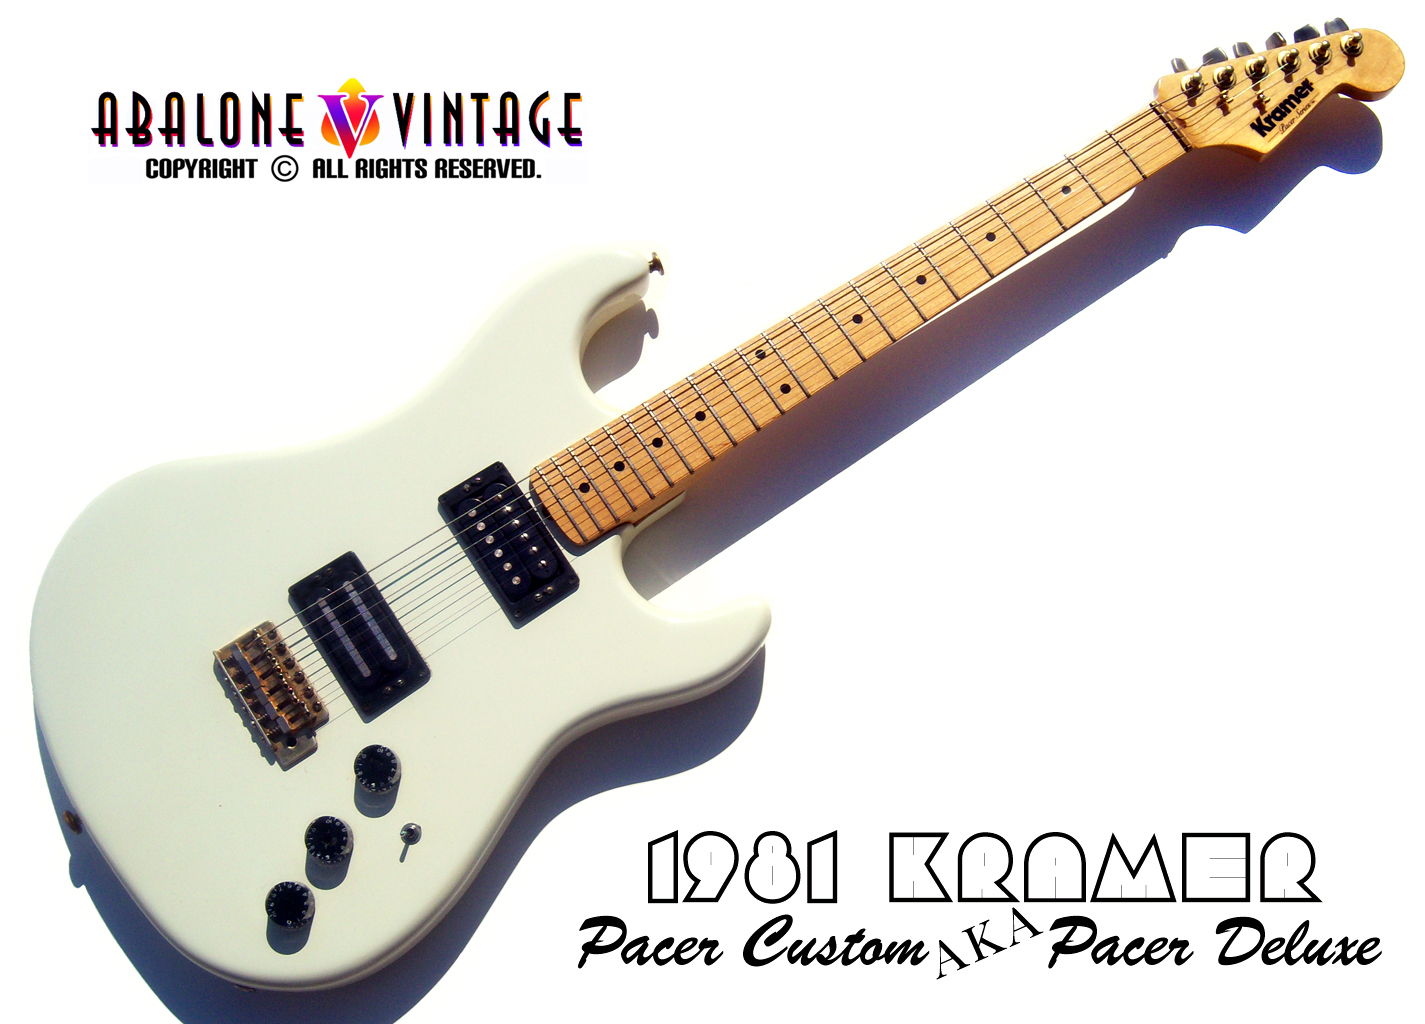 1981 Kramer Pacer Deluxe Guitar